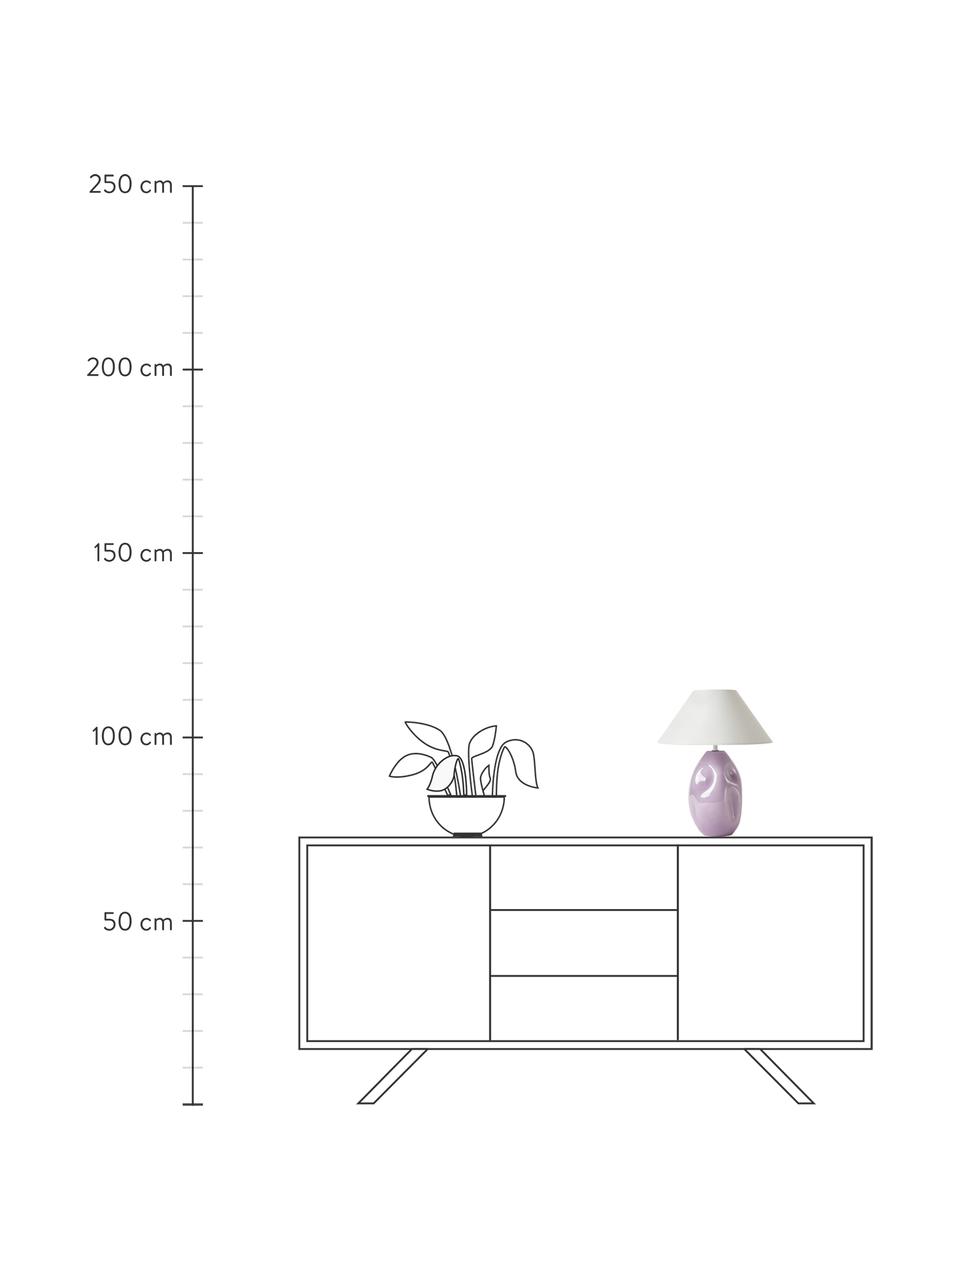 Lampada da tavolo in vetro opalino lilla Xilia, Paralume: tessuto, Base della lampada: vetro opalino, Lilla, bianco, Ø 40 x Alt. 18 cm